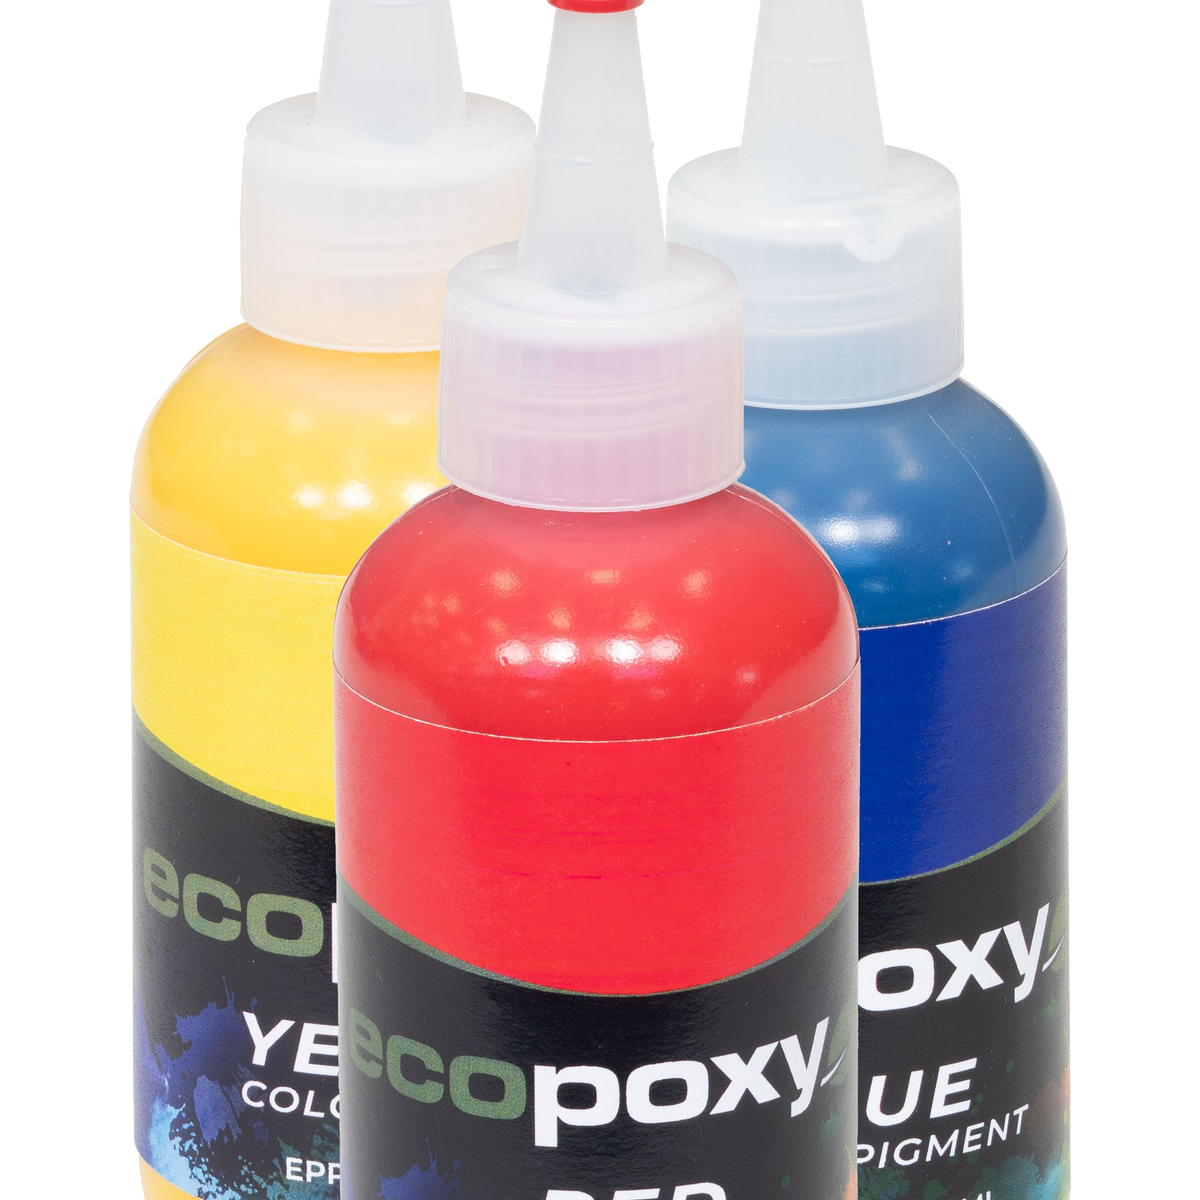 Ivory Epoxy Resin Liquid Pigment